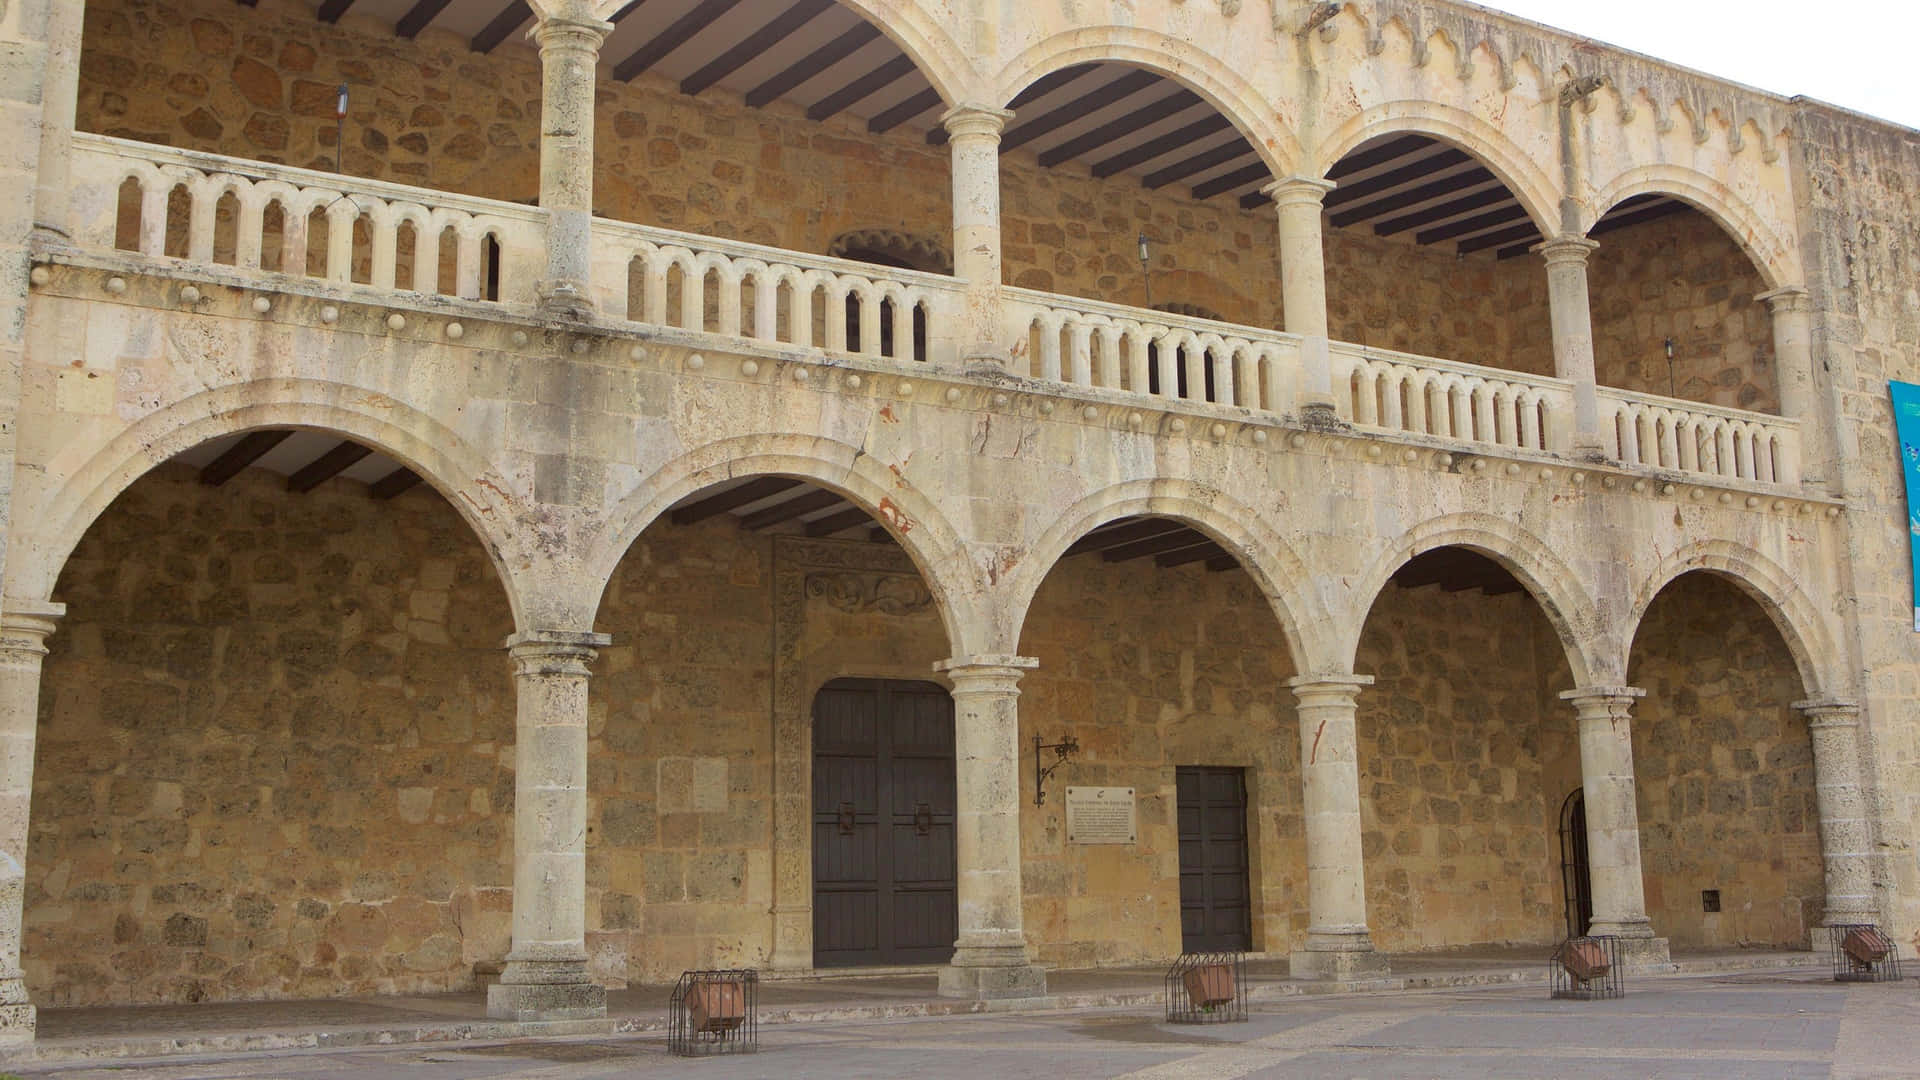 Arches And Architecture Of The Alcazar De Colon Wallpaper